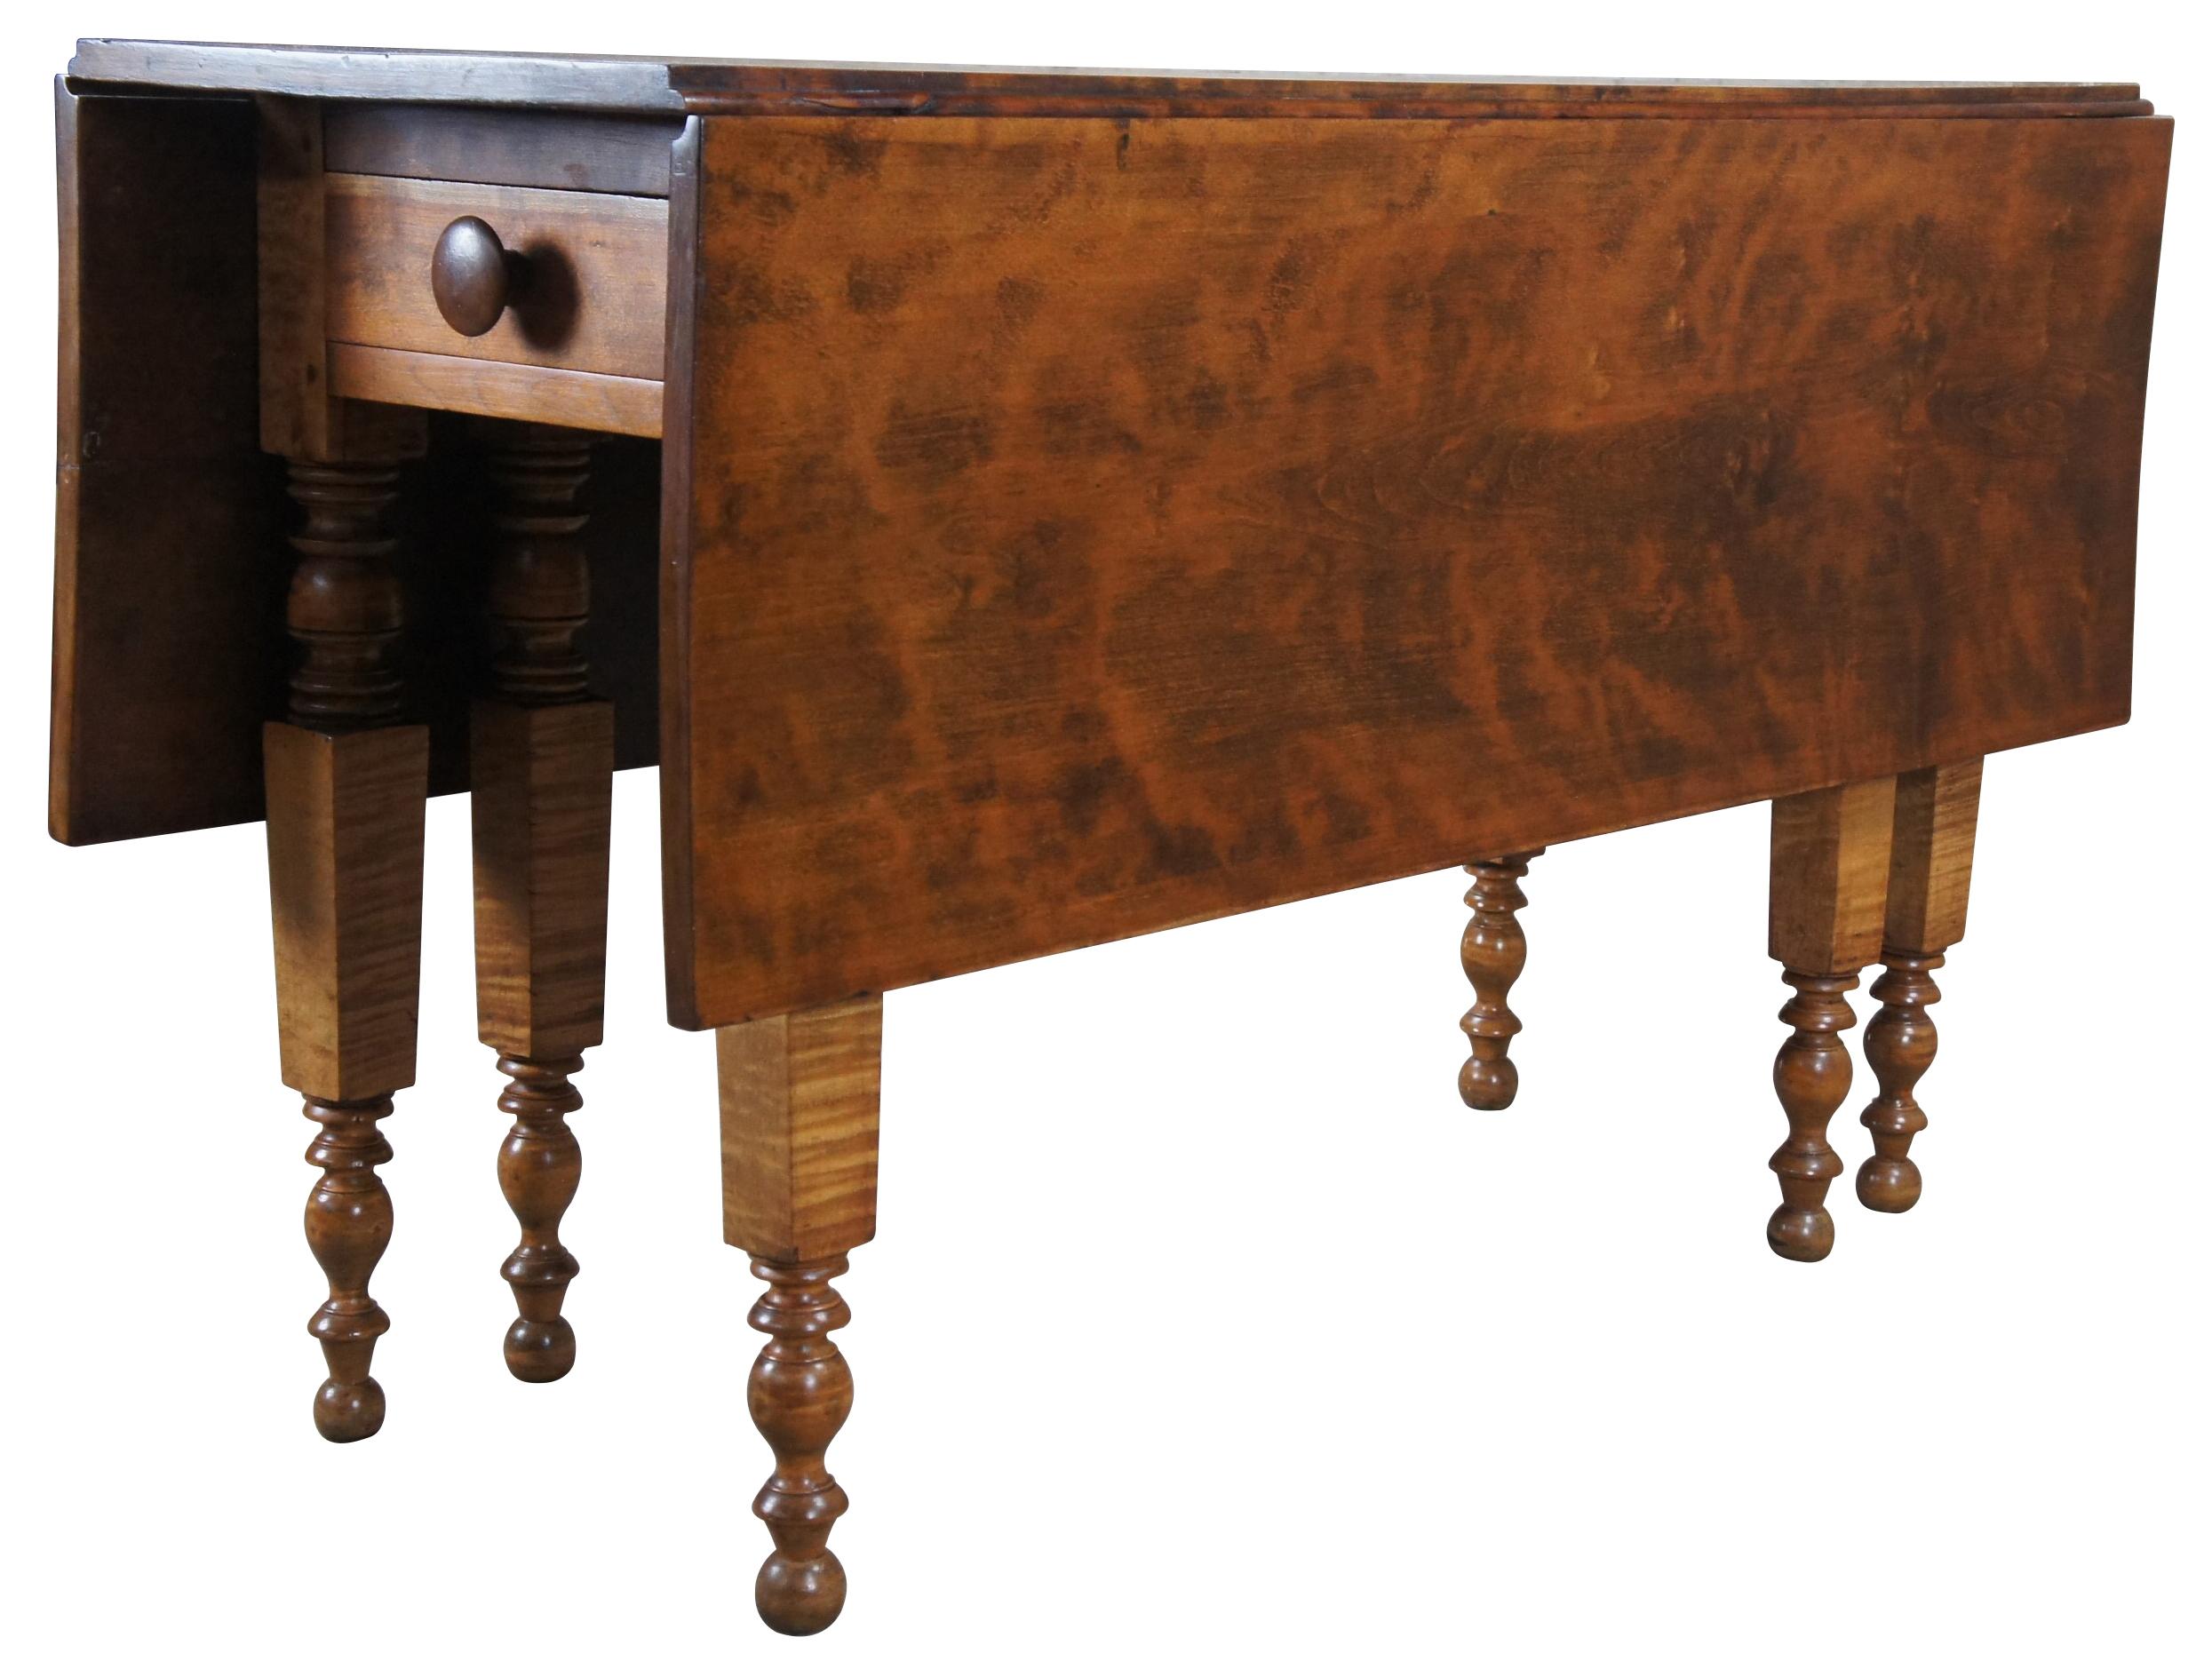 Une impressionnante table américaine à pieds en forme de porte du 19ème siècle.  Fabriqué à partir d'un magnifique érable frisé (tigre), avec des pieds tournés à la main et un tiroir sur le devant.  Idéal pour une utilisation comme table à manger ou